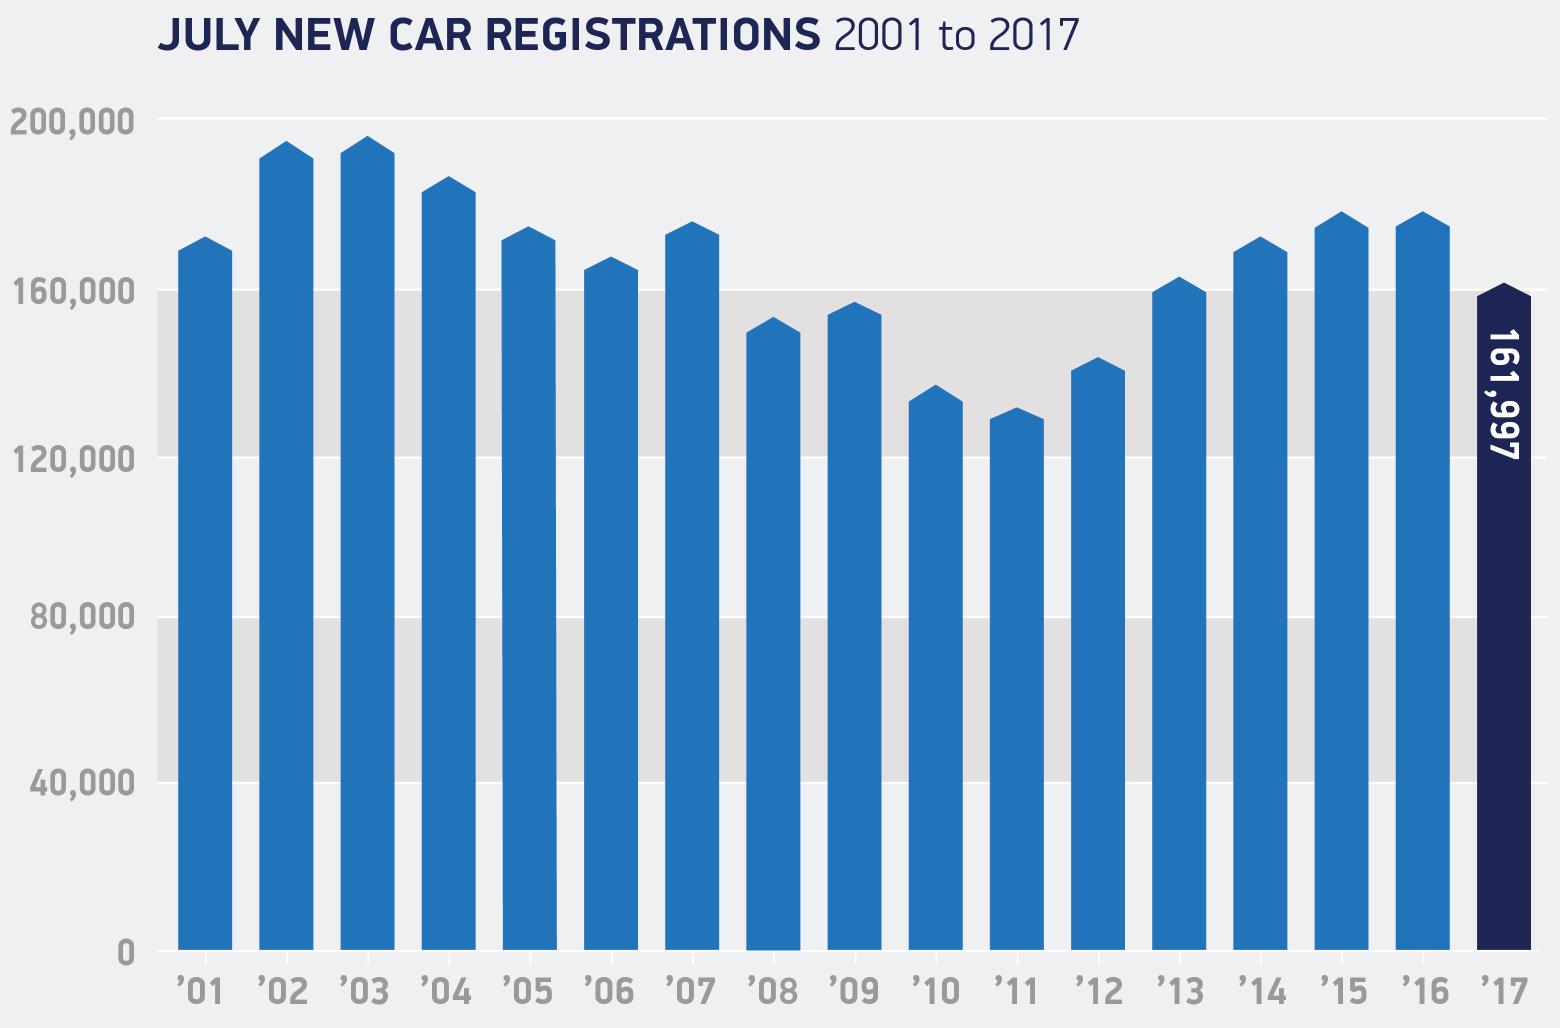 New Car Sales